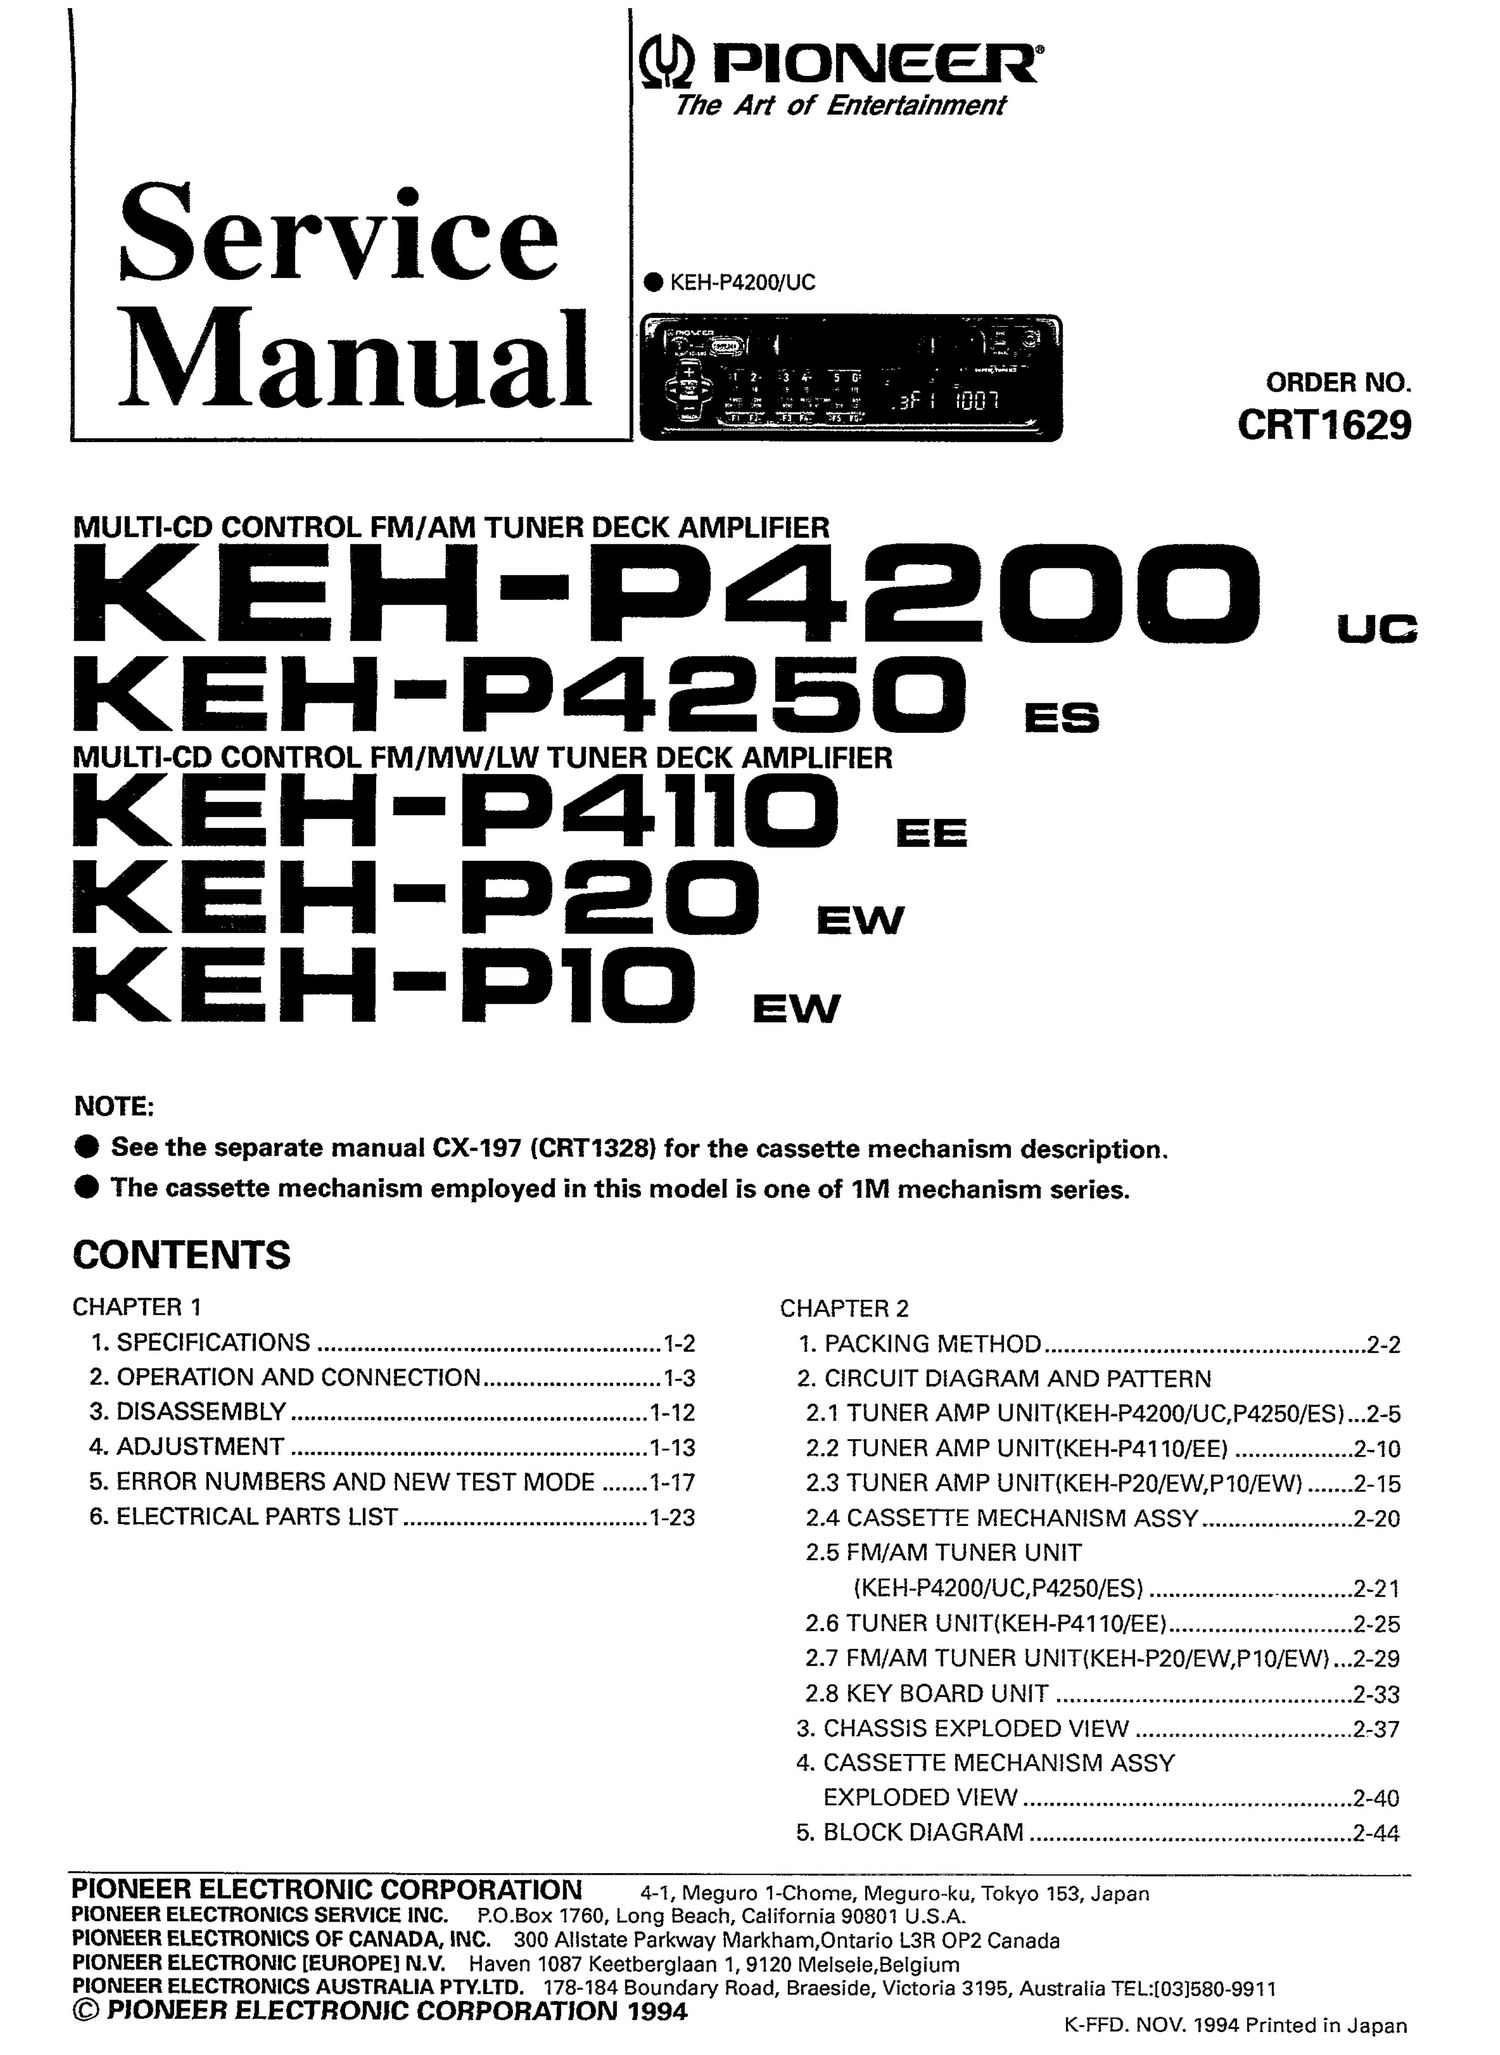 pioneer kehp 4200 service manual